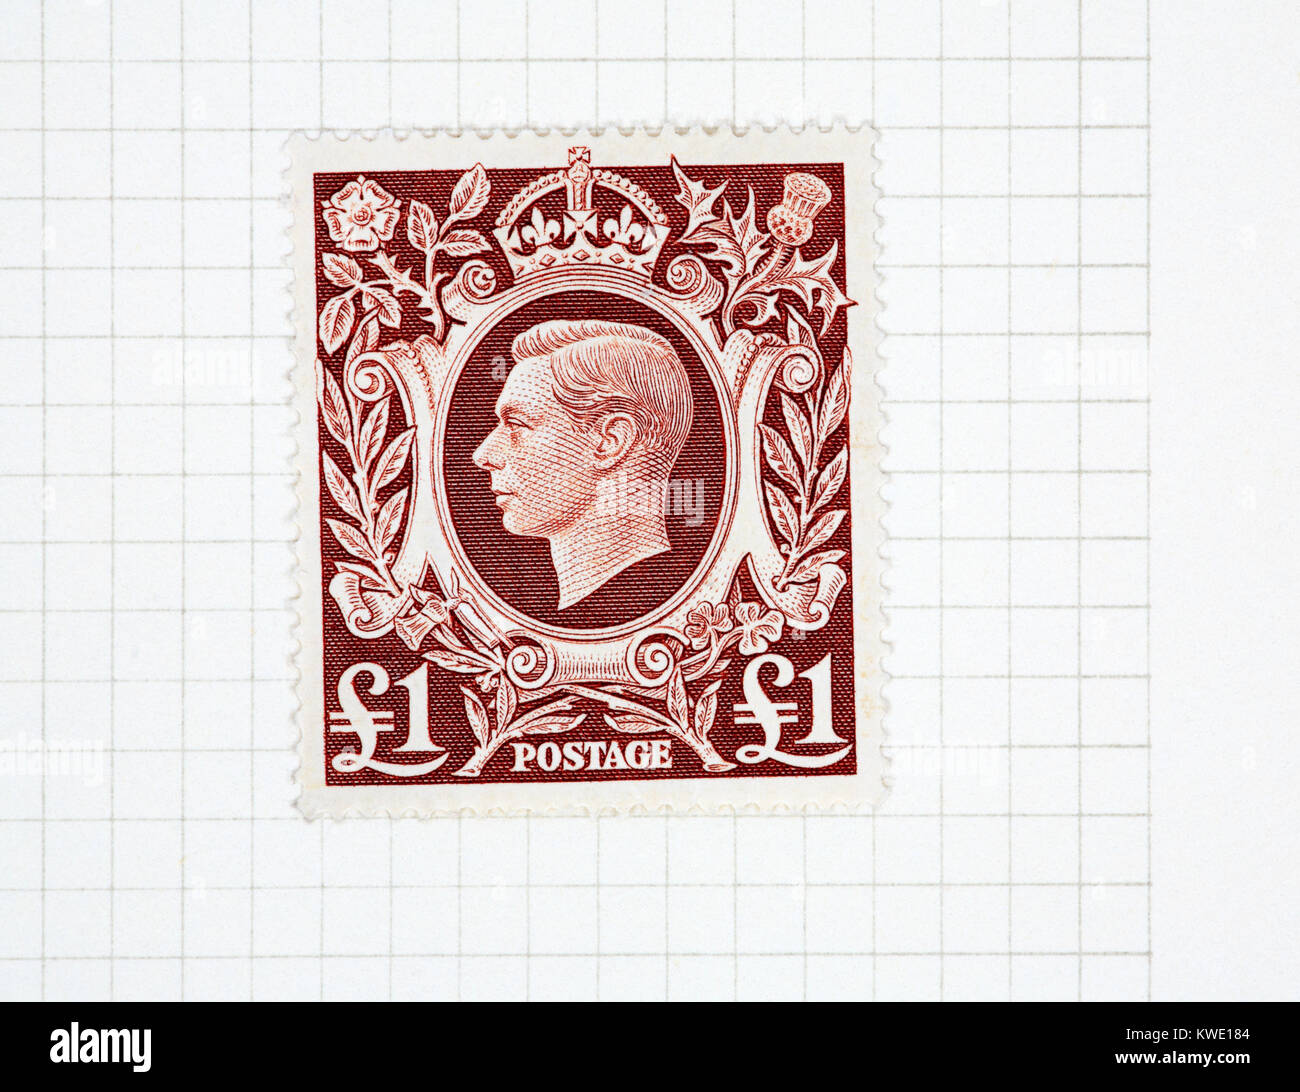 Une monnaie royale Le roi George VI €1 brown stamp de 1939-48 question à partir d'une collection de timbres britanniques. Banque D'Images